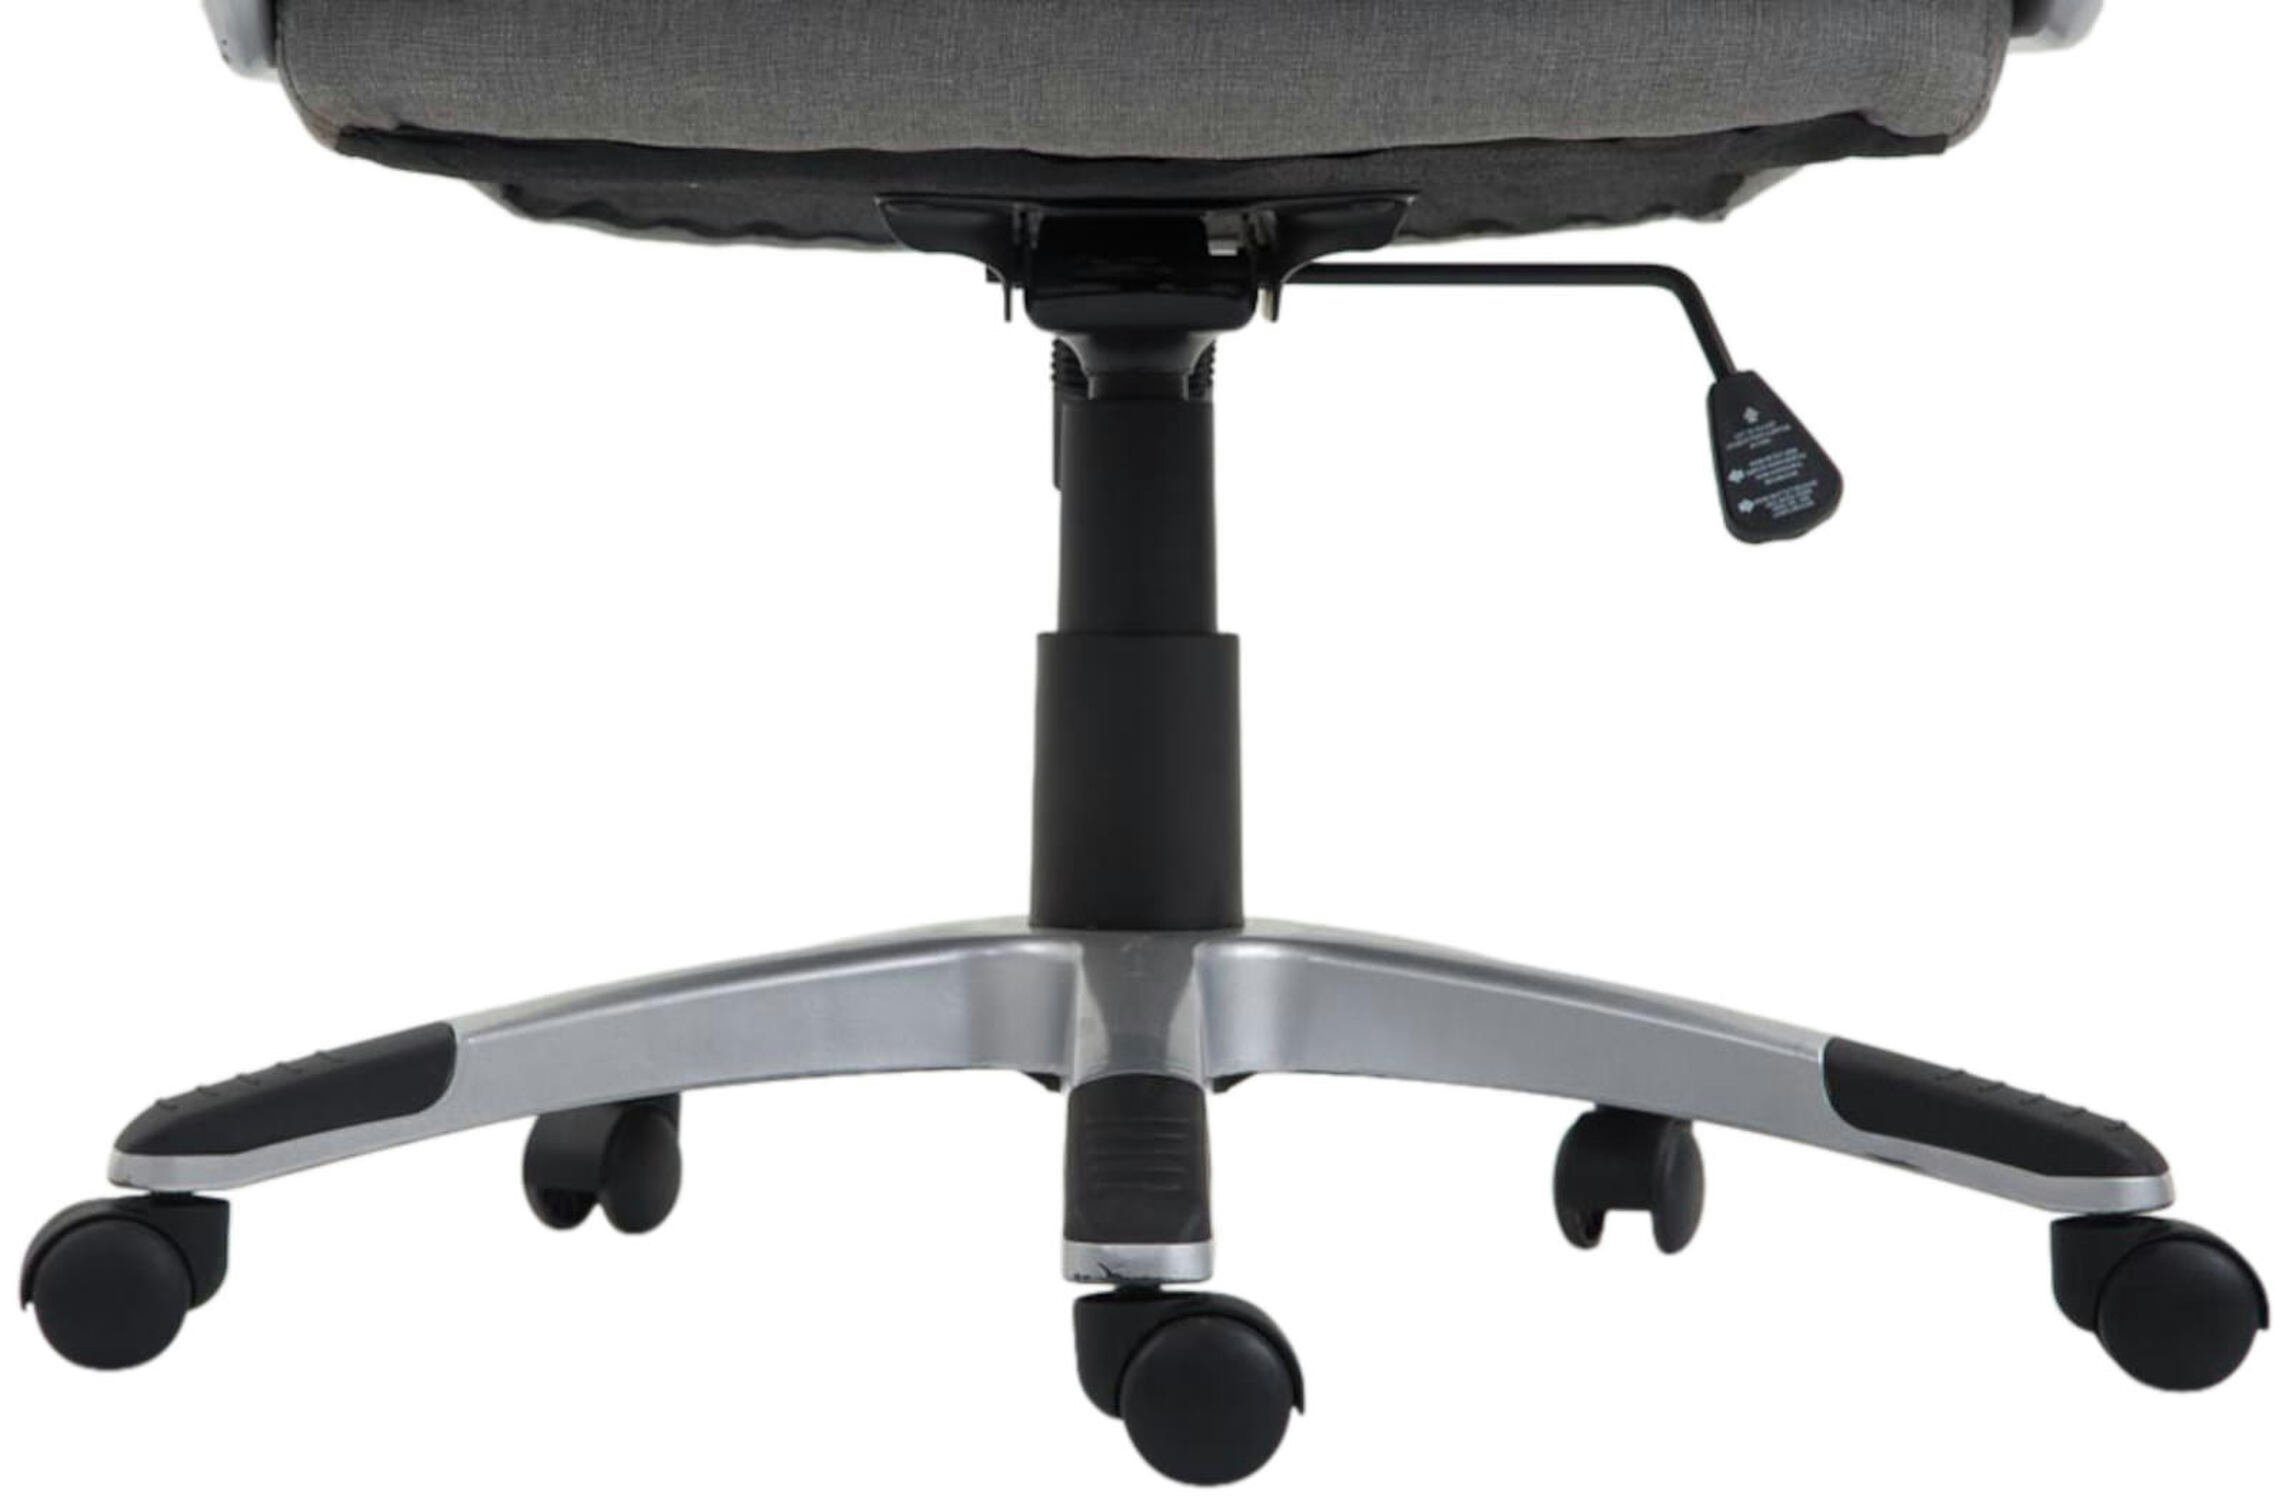 TPFLiving Bürostuhl Texum 2 mit Gestell: Chefsessel, grau 360° XXL), und (Schreibtischstuhl, Stoff bequemer Kunststoff Drehstuhl, Bürostuhl höhenverstellbar - - silber drehbar Rückenlehne Sitz